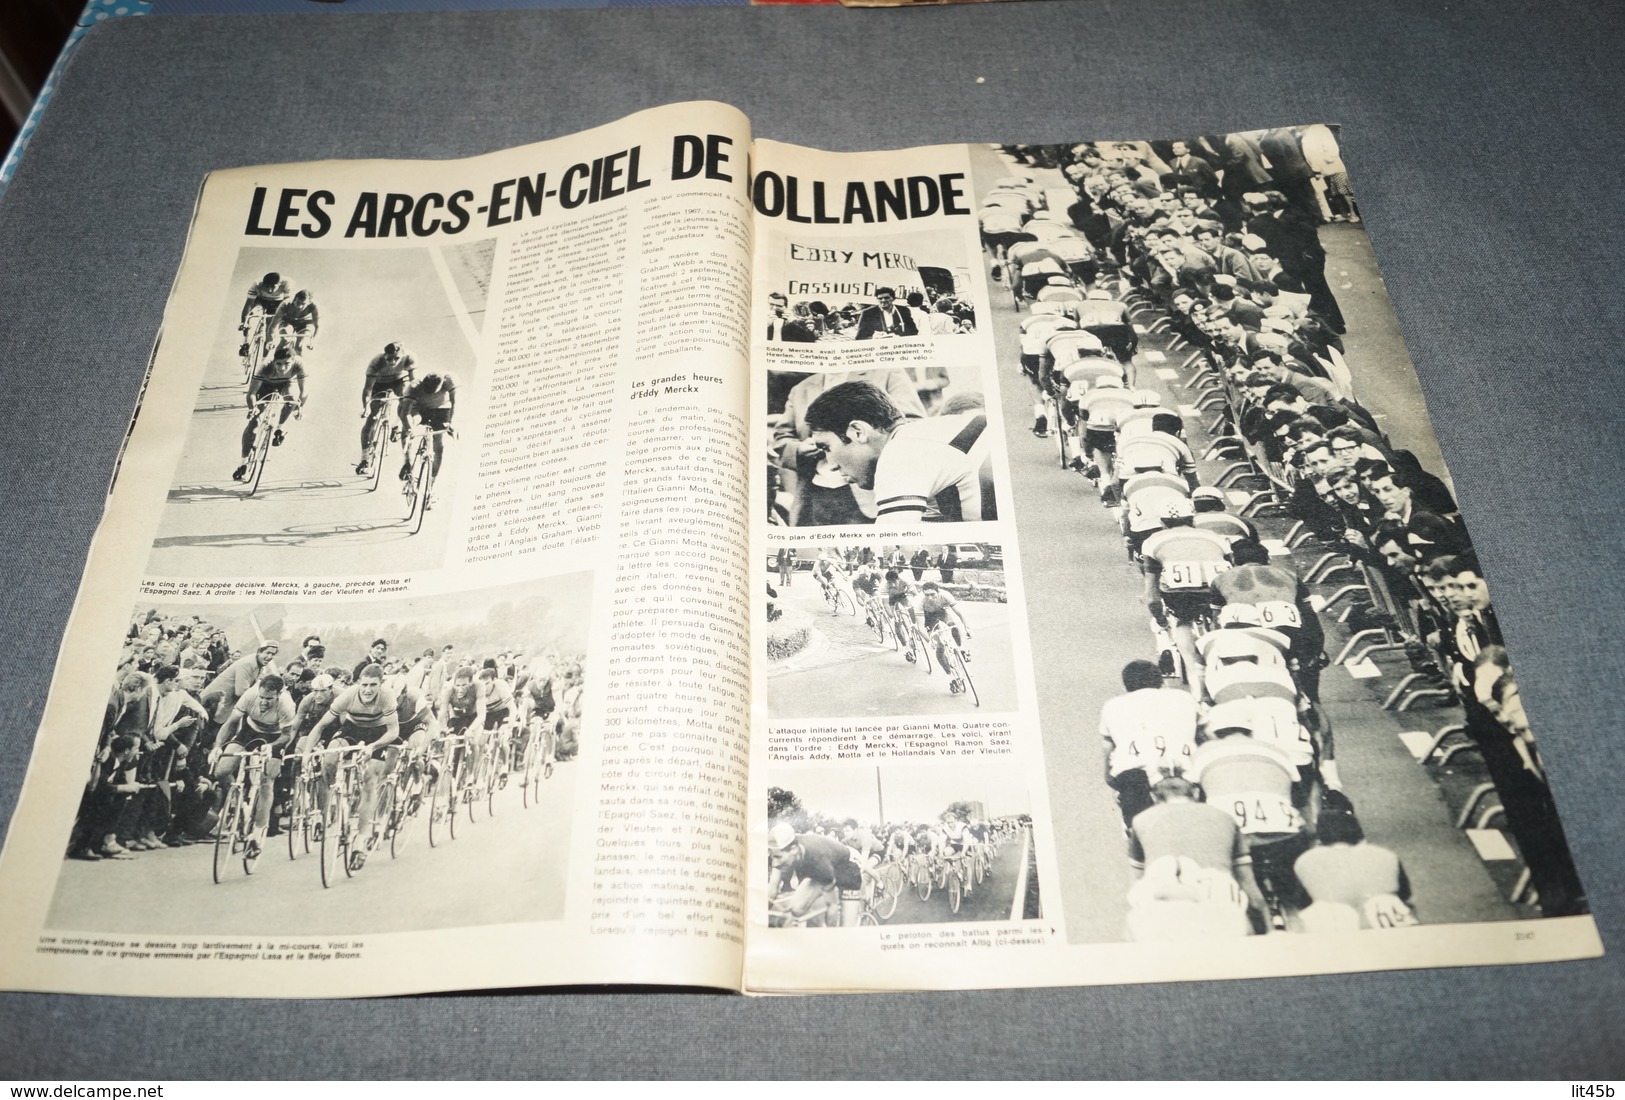 Cyclisme,Le Meilleur,Eddy Merckx,revue Le Patriote Illustré,Septembre 1967,sport,coureurs Cycliste,pour Collection - Cyclisme